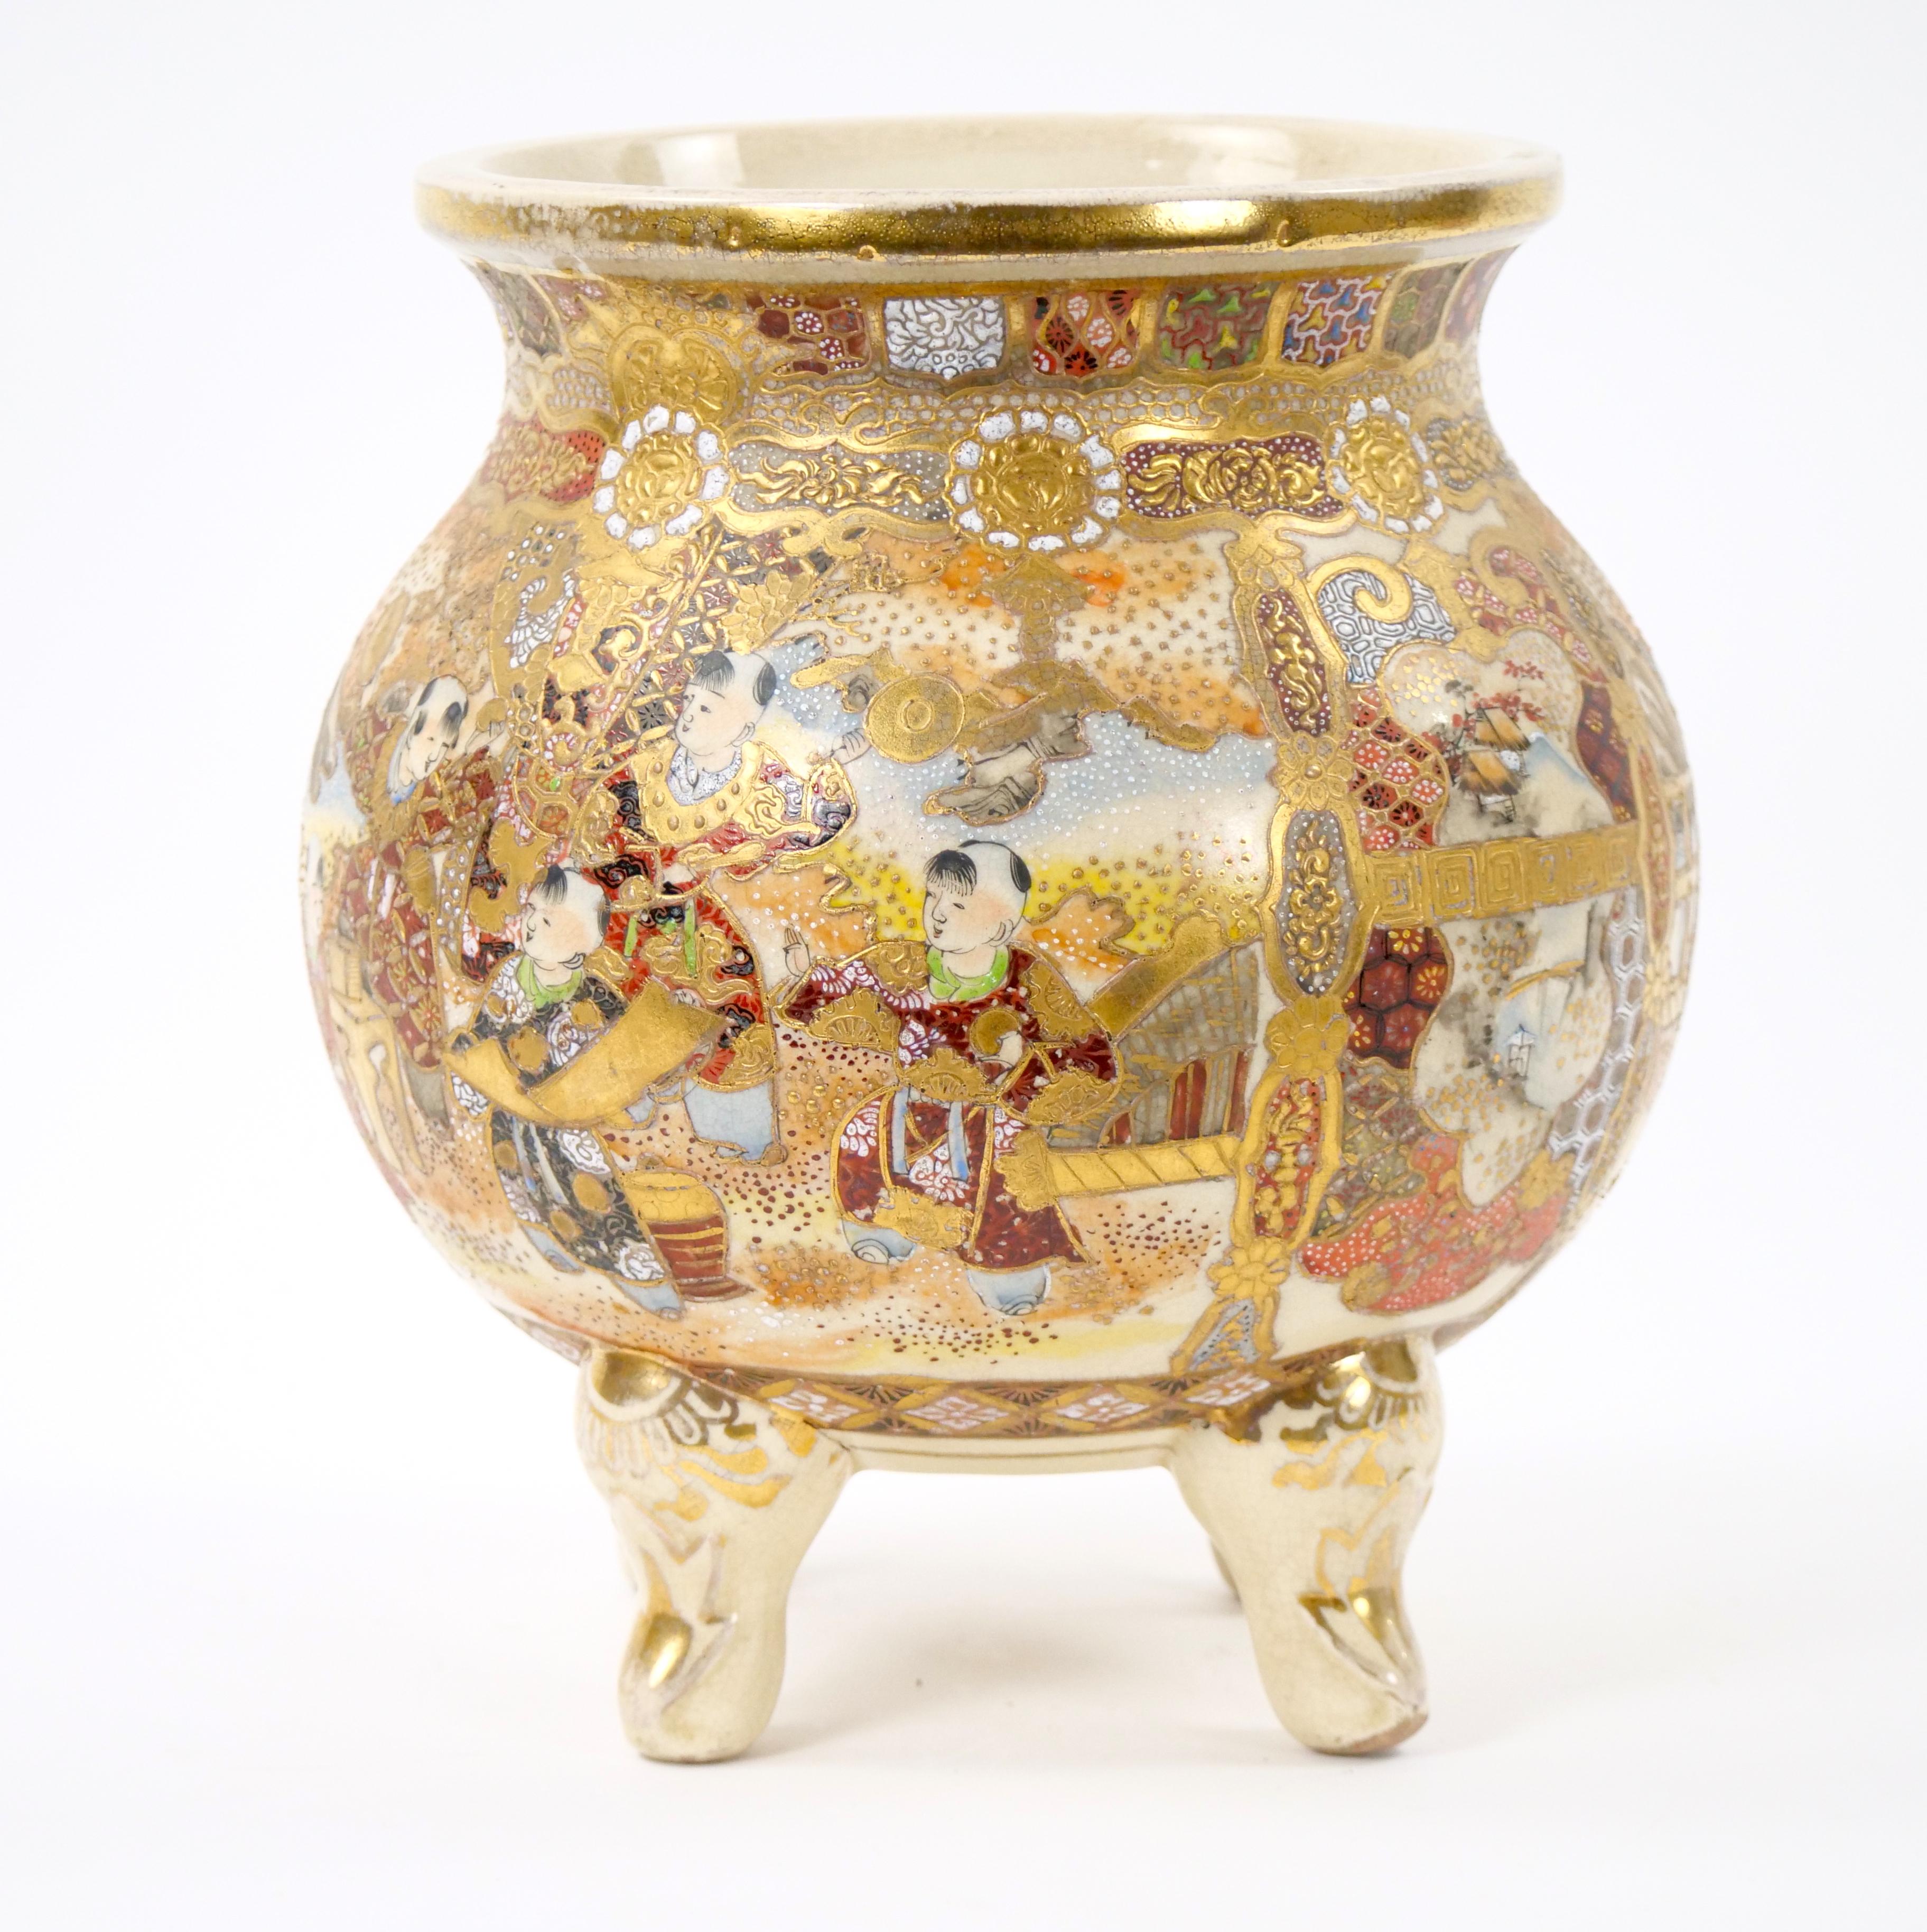 Mit dieser exquisiten handbemalten und vergoldeten Satsuma-Vase mit Fuß tauchen Sie in den Charme des 19. Jahrhunderts ein. Diese sorgfältig gefertigte Vase verkörpert die künstlerische Finesse und das kulturelle Erbe dieser Epoche.
Die handgemalten